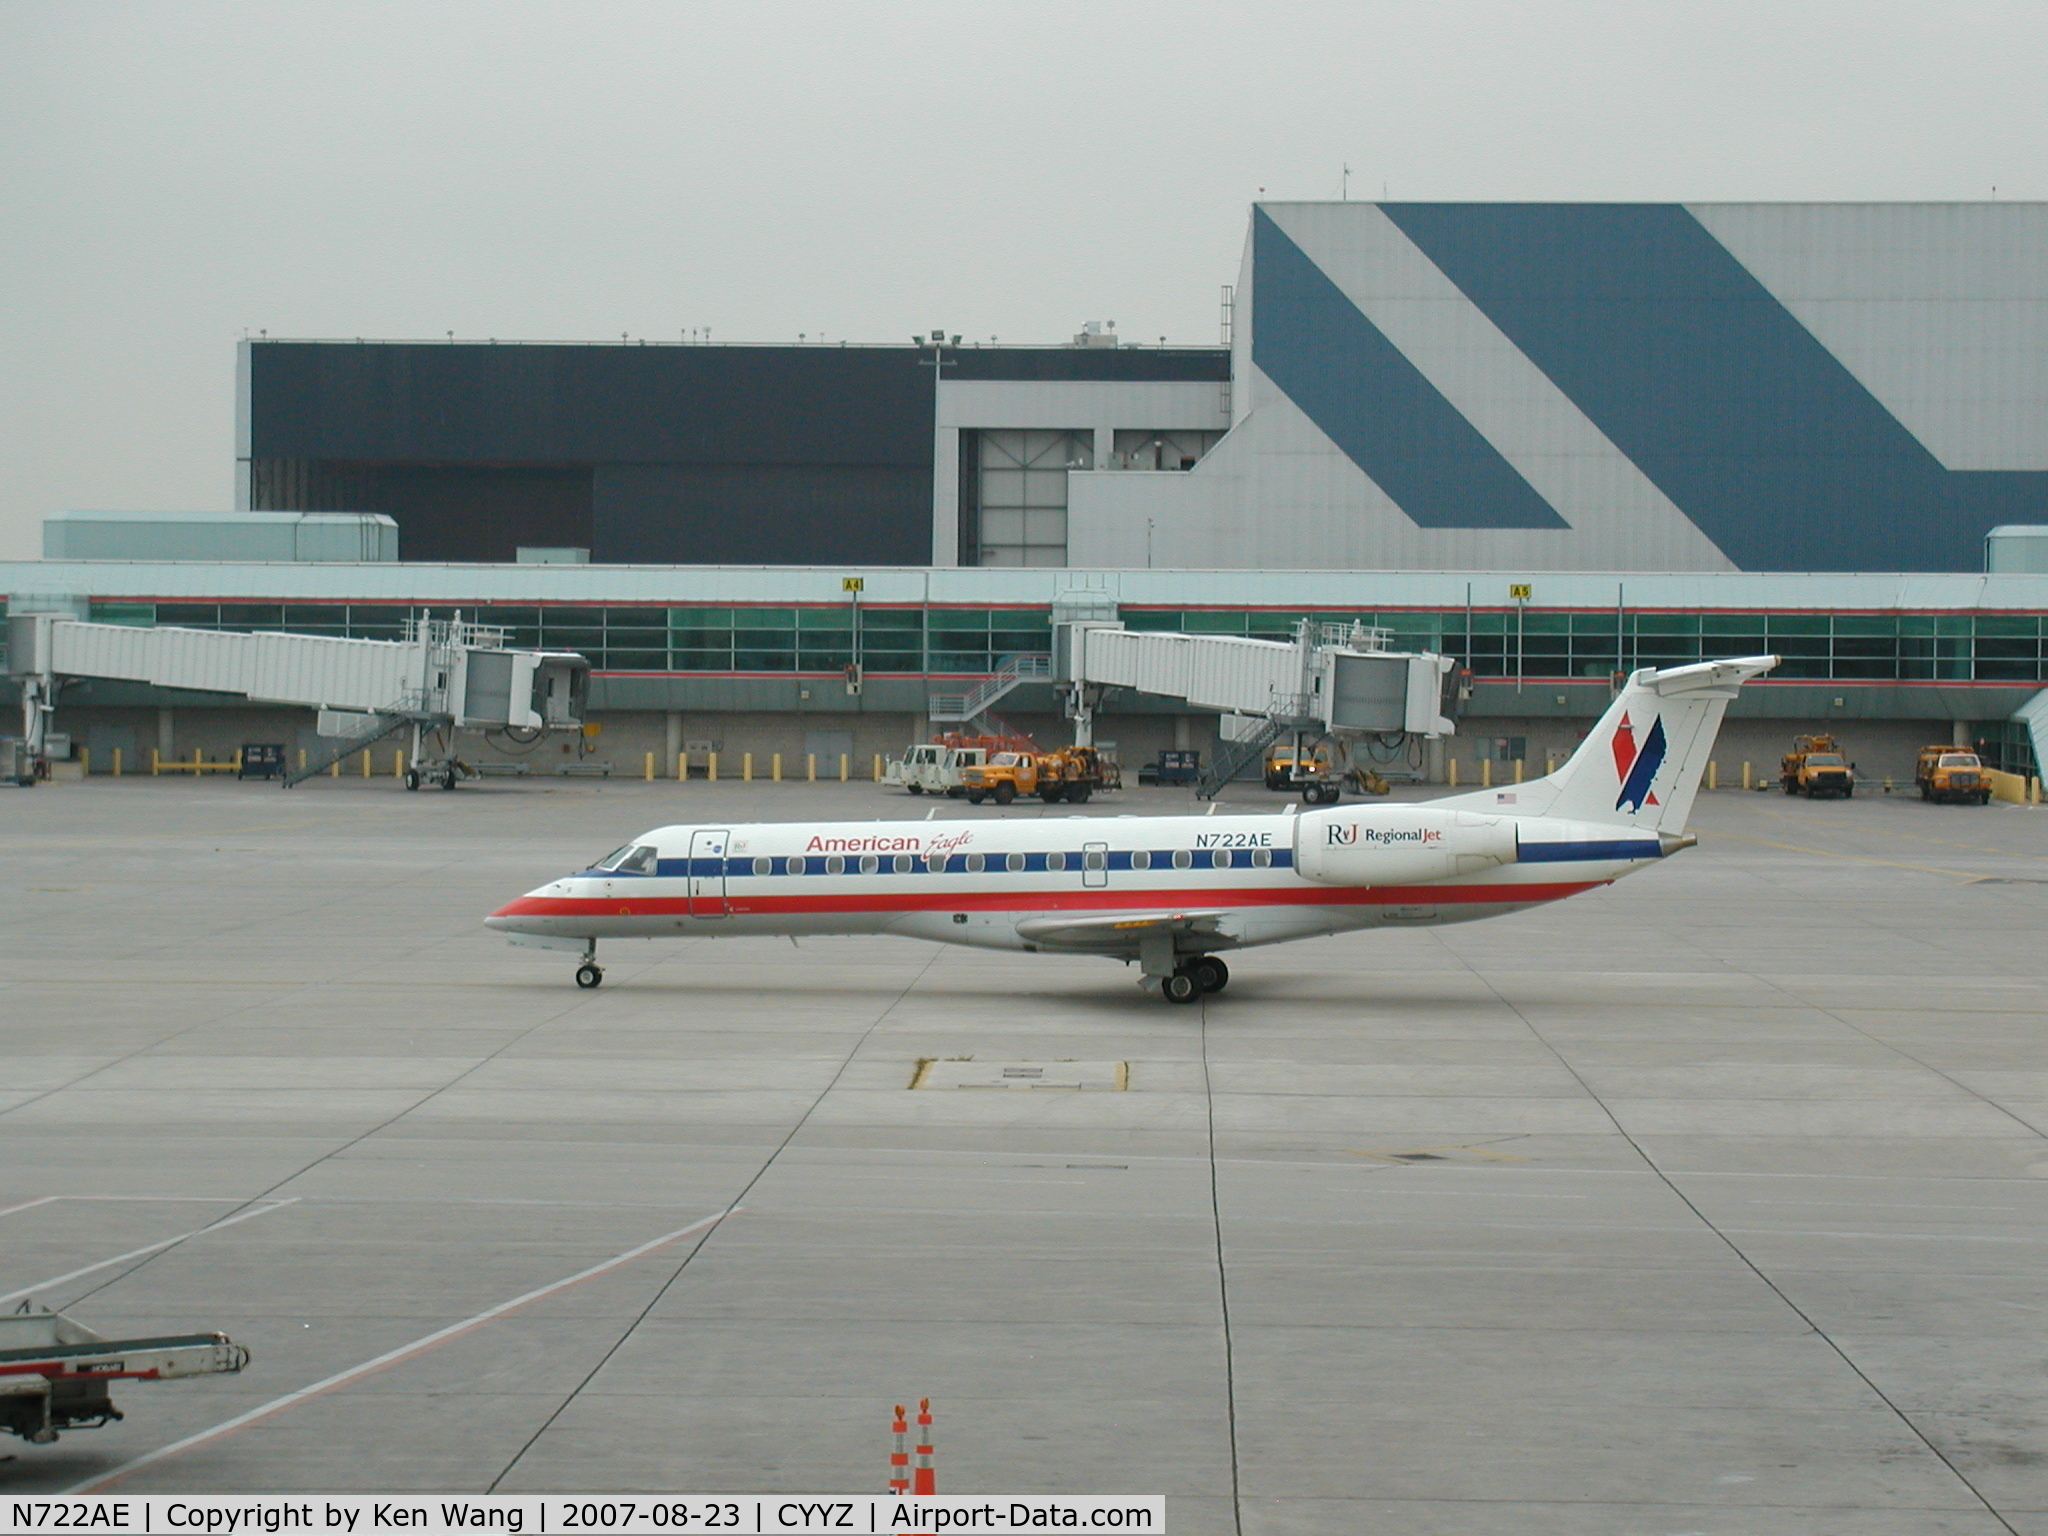 N722AE, 2000 Embraer ERJ-135LR (EMB-135LR) C/N 145287, American Eagle leaving Toronto Pearson Airport